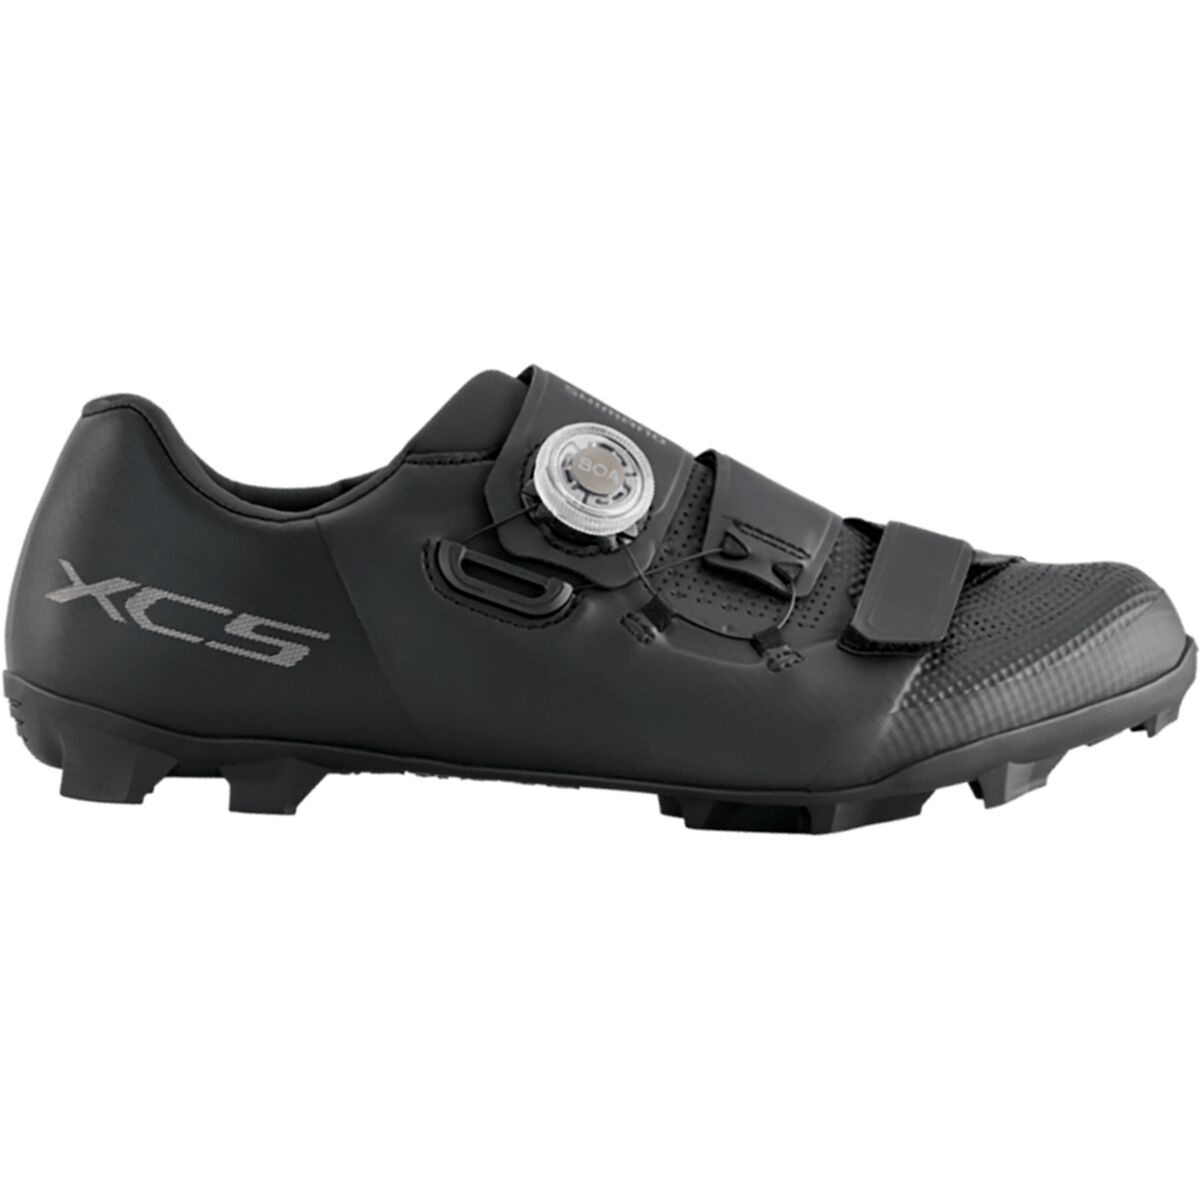 Shimano XC502 Wide Cycling Shoe - Men's Black, 43.0